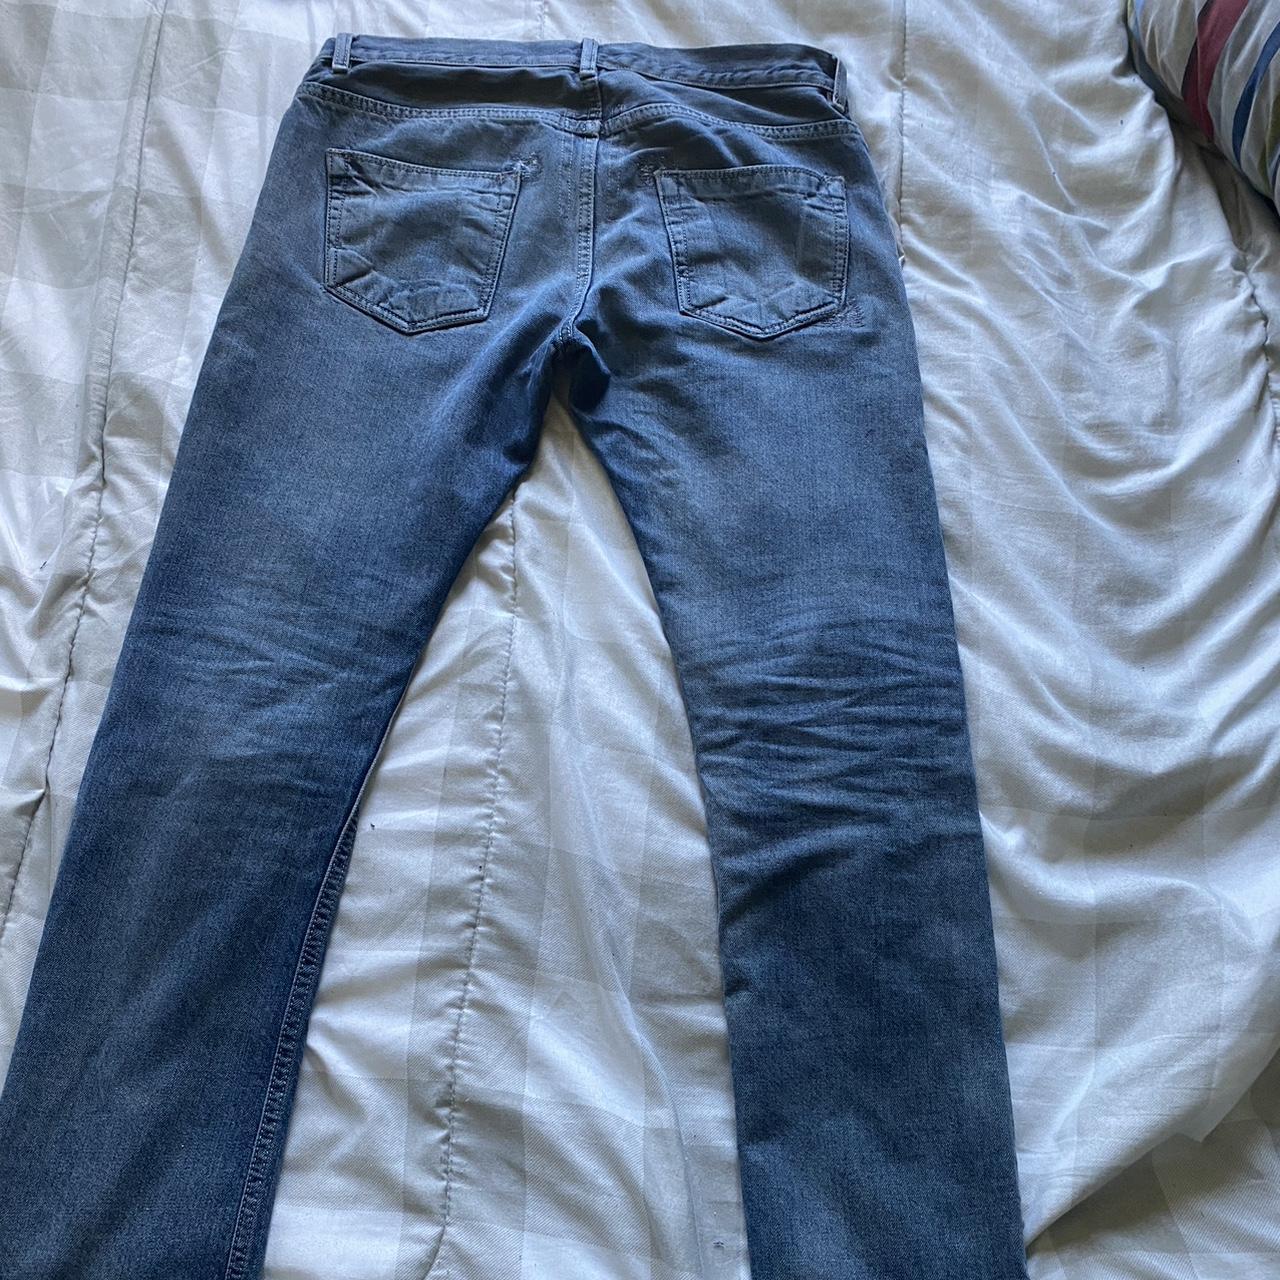 Rick owens drkshdw detroit cut jeans Size   Depop